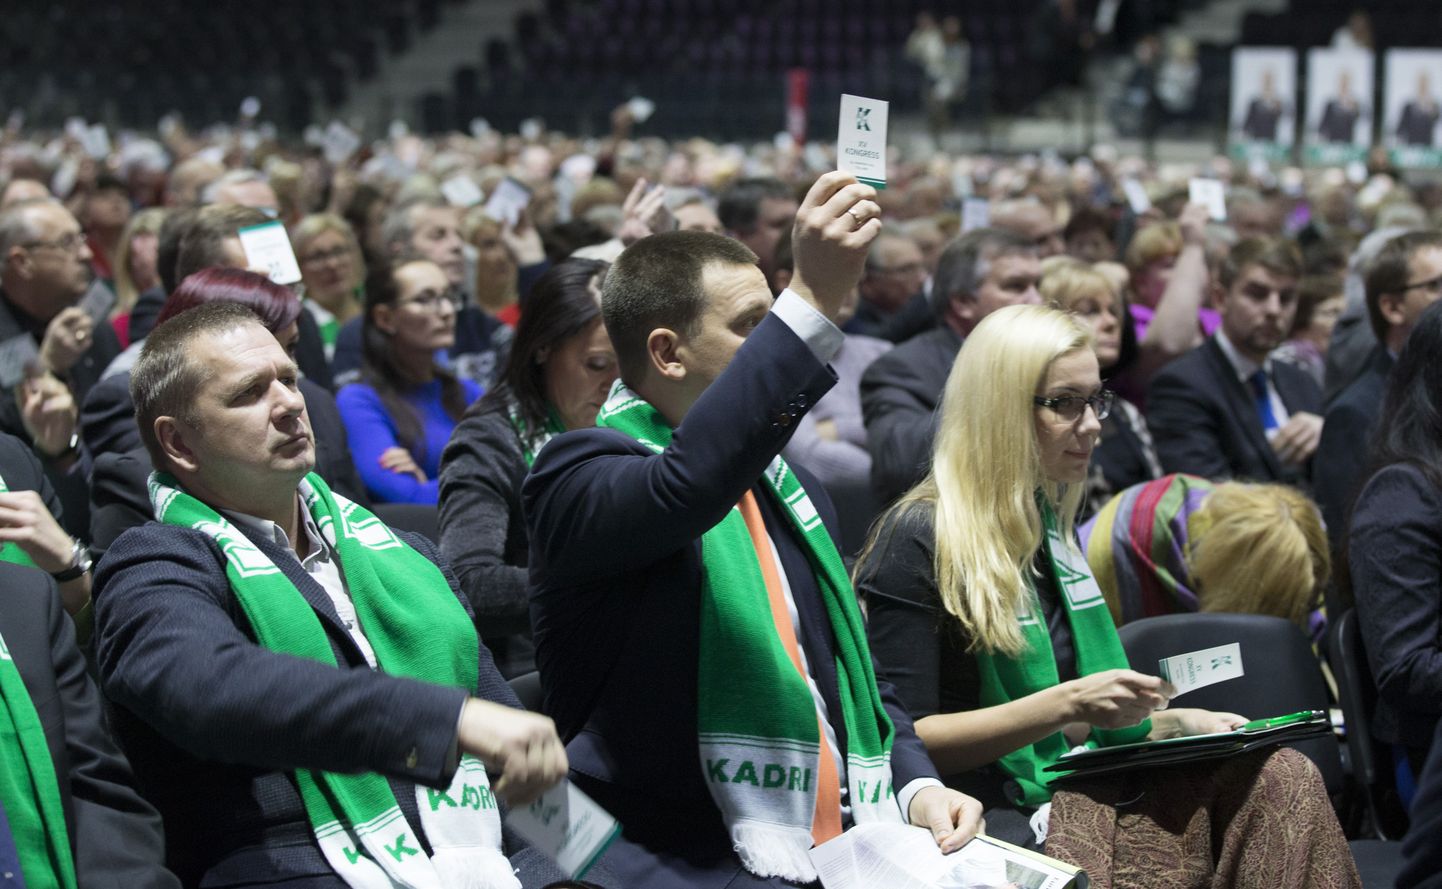 Kadri Simsoni toetajad kandsid kongressil oma eelistuse märgiks rohelist salli. Esireas vasakul Keskerakonna Valgamaa piirkonna esimees Endel Uppin.